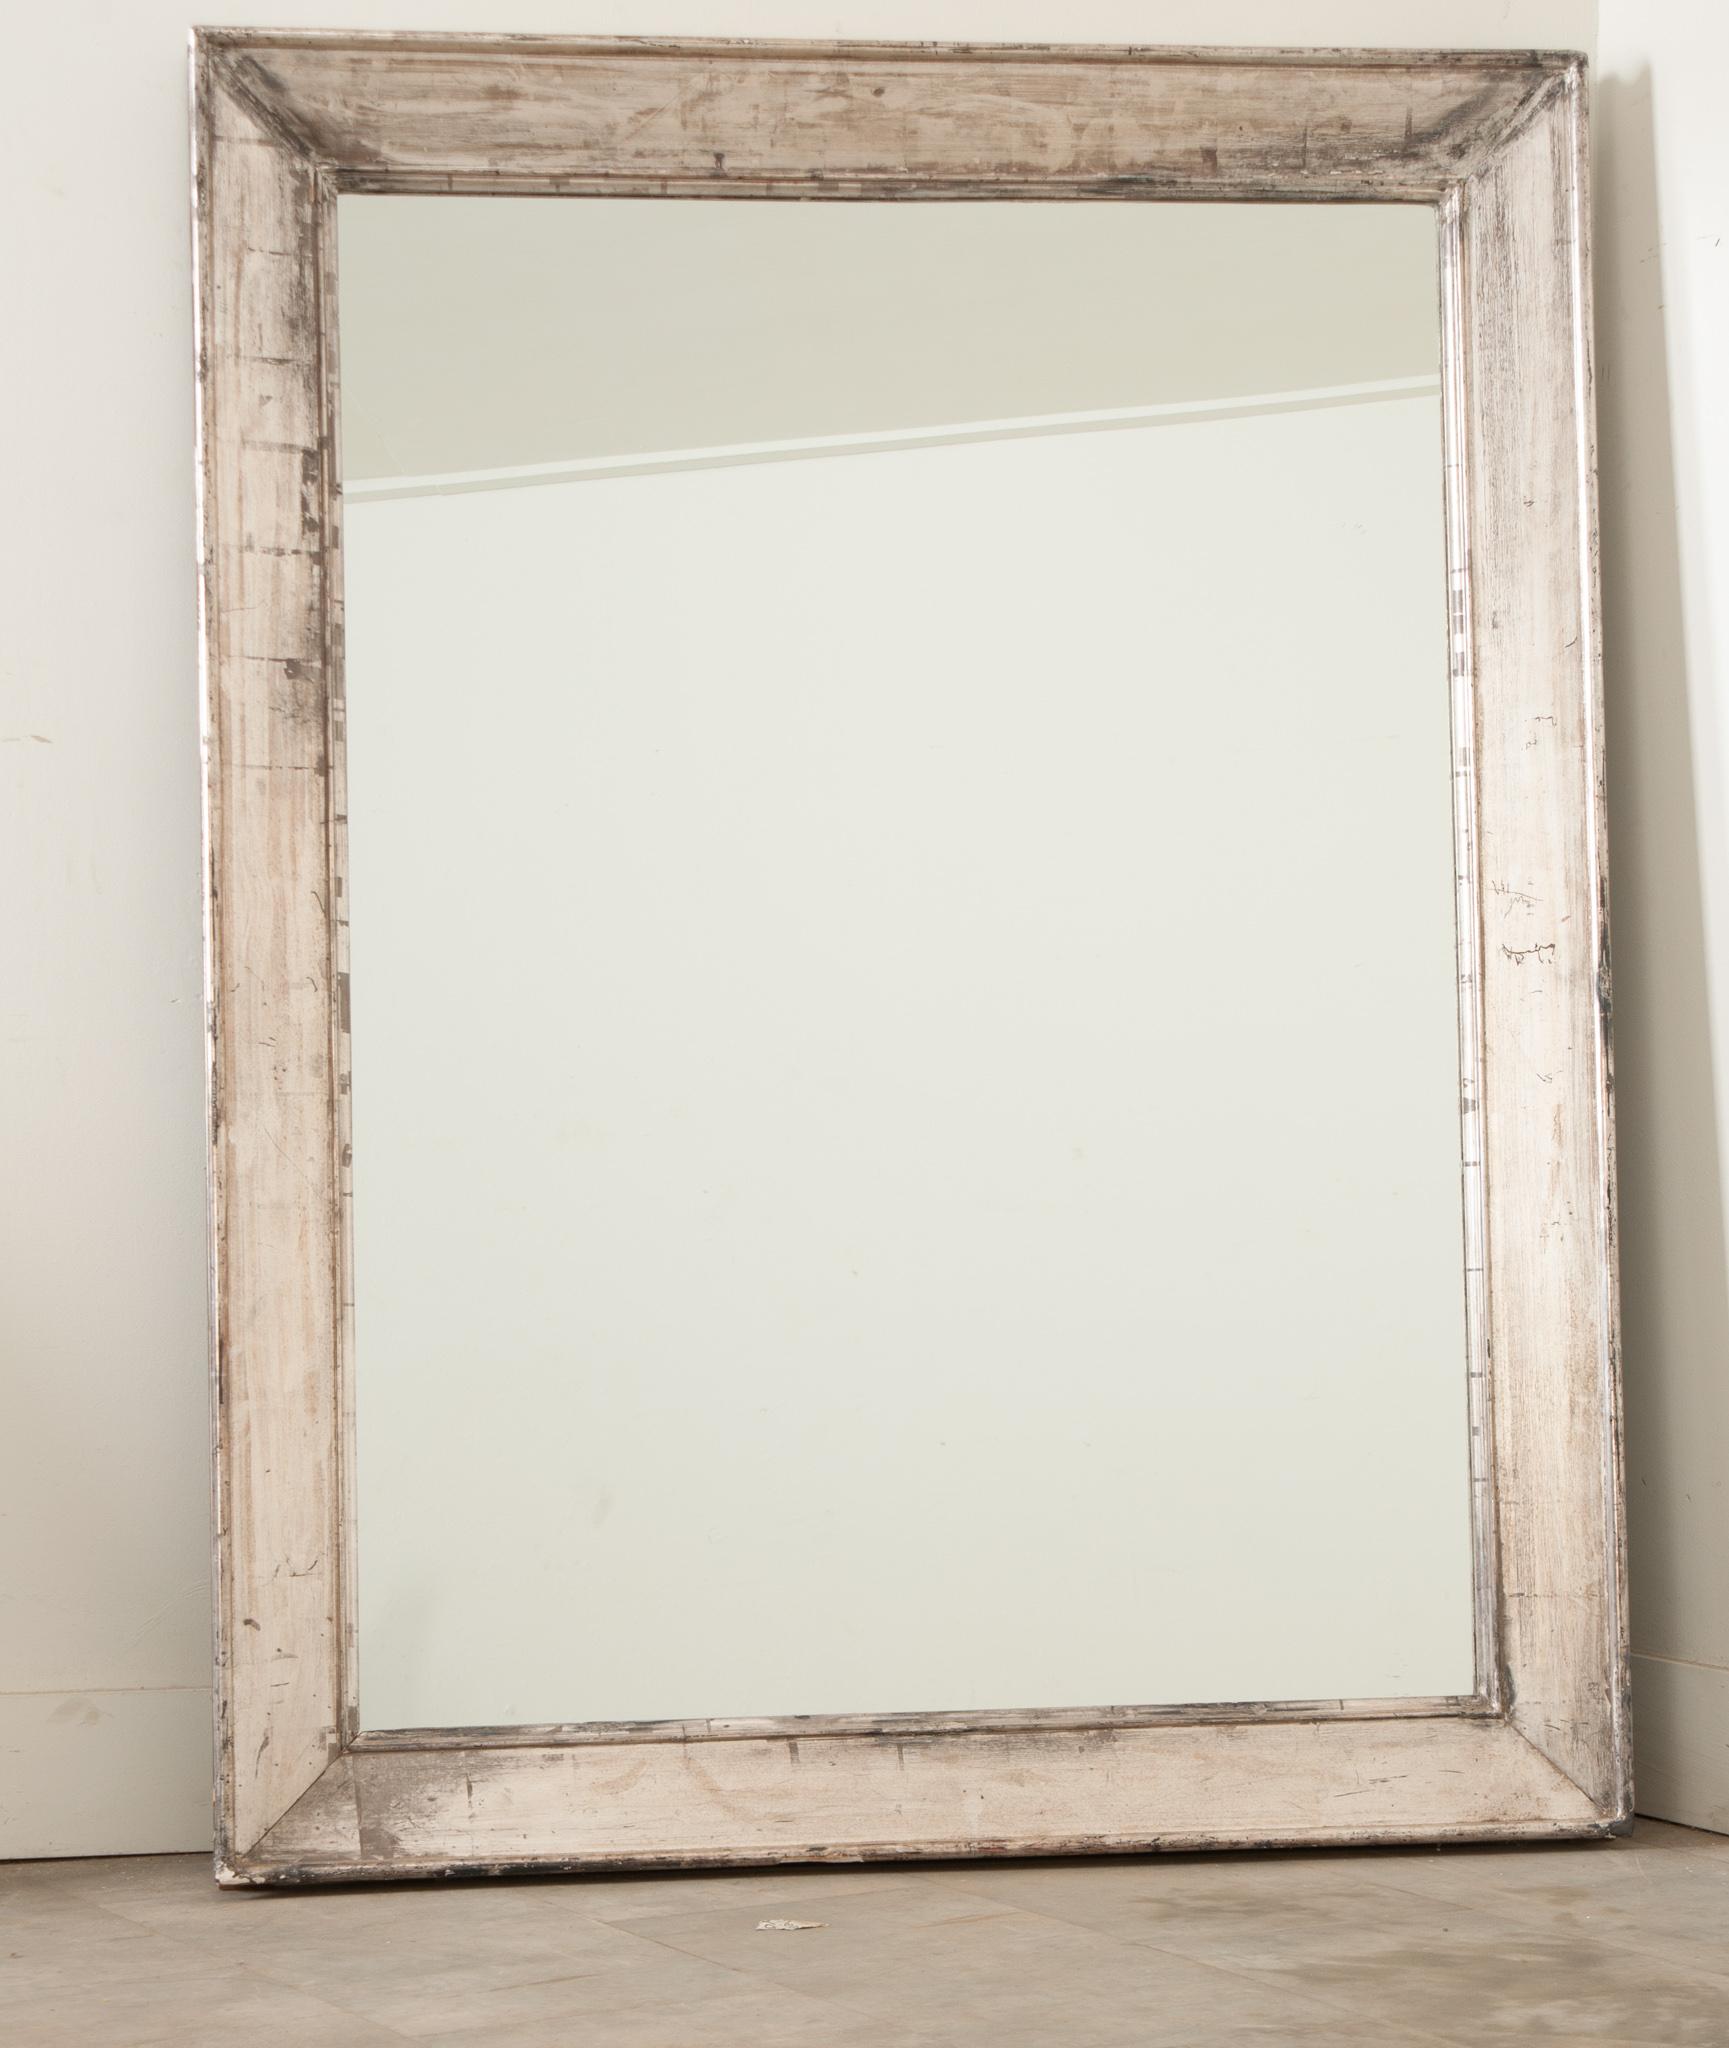 Le cadre d'un miroir en bois biseauté de fabrication récente et de grande taille présente une finition dorée à l'argent volontairement usée. Plaque de rétroviseur neuve. Ce miroir ne manquera pas de faire sensation dans n'importe quel intérieur. Ne